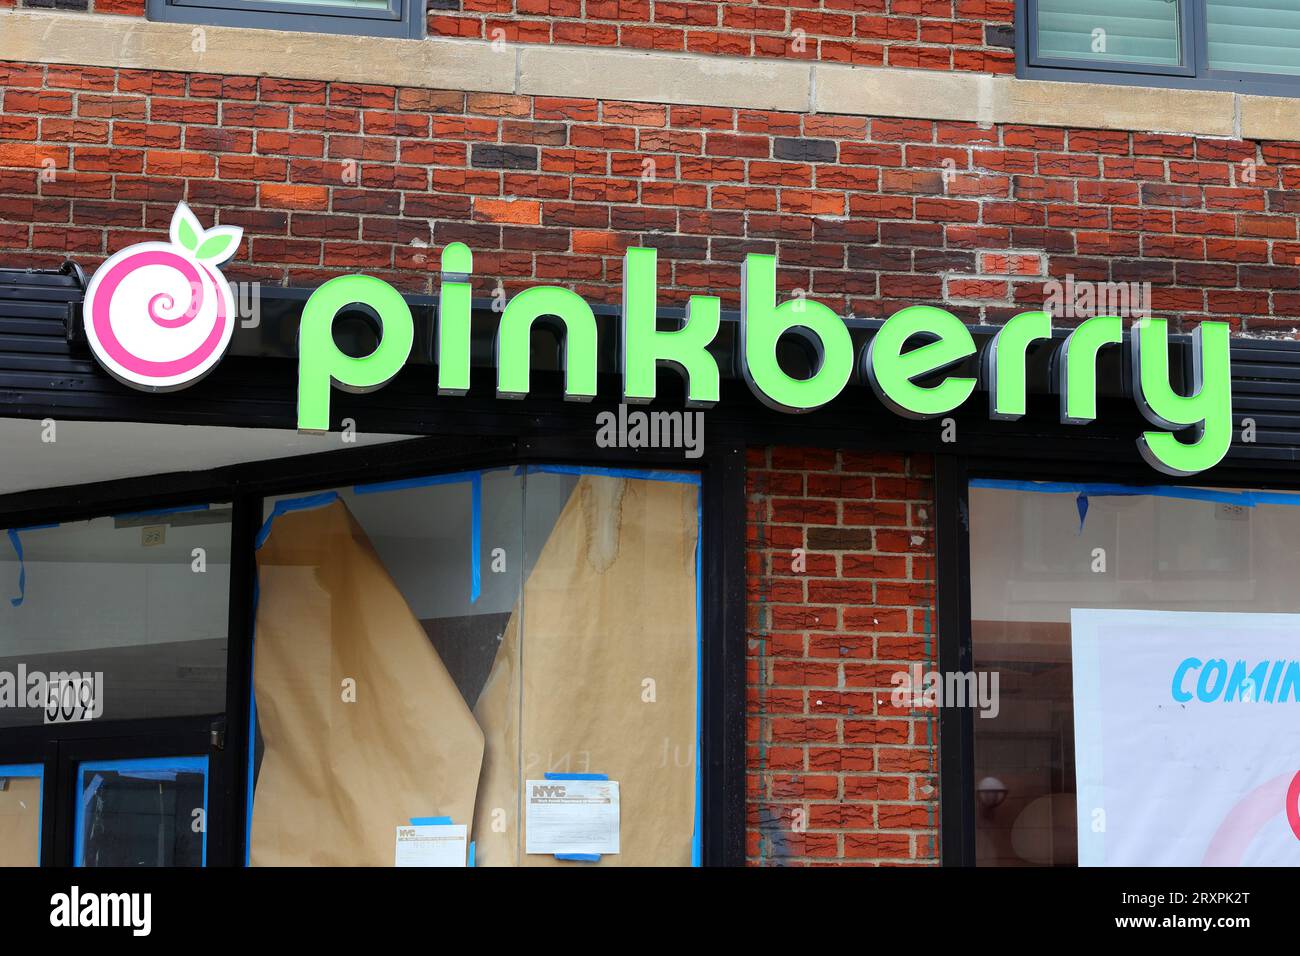 Beschilderung für einen Pinkberry Frozen Joghurt Shop und Franchise an einem Standort in New York City, der bald eröffnet wird. Stockfoto